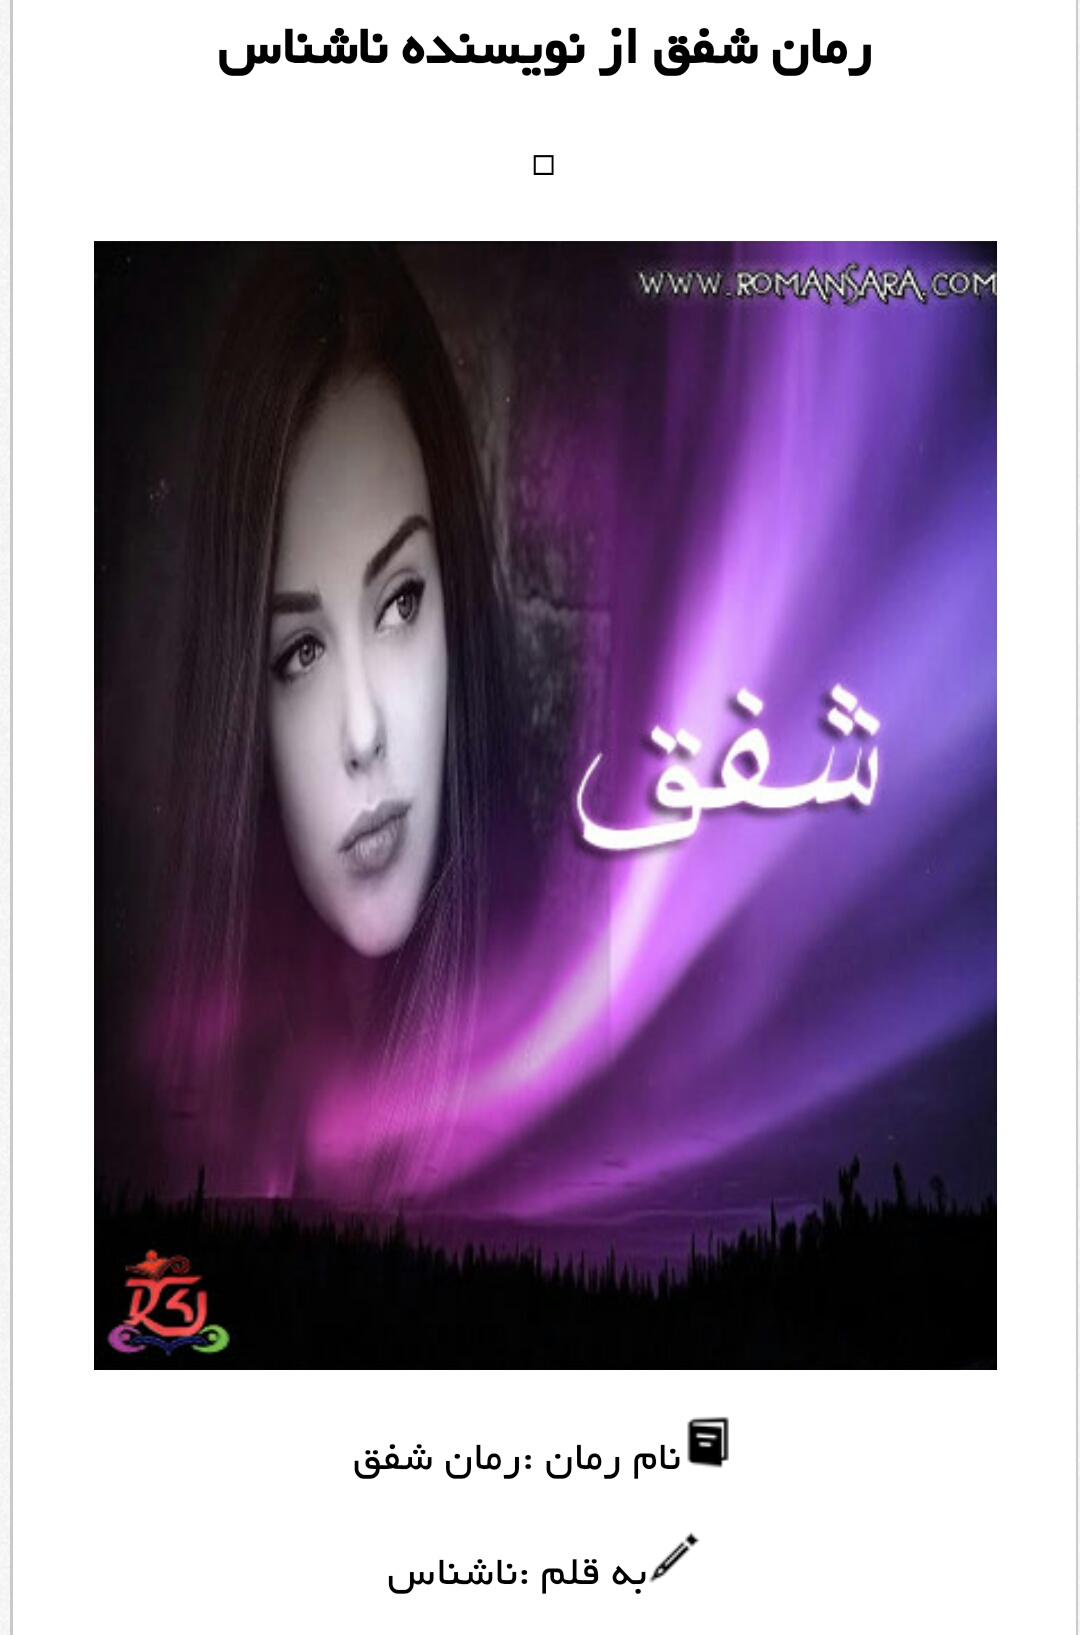 رمان عاشقانه ایرانی بدون سانسور پی دی اف
